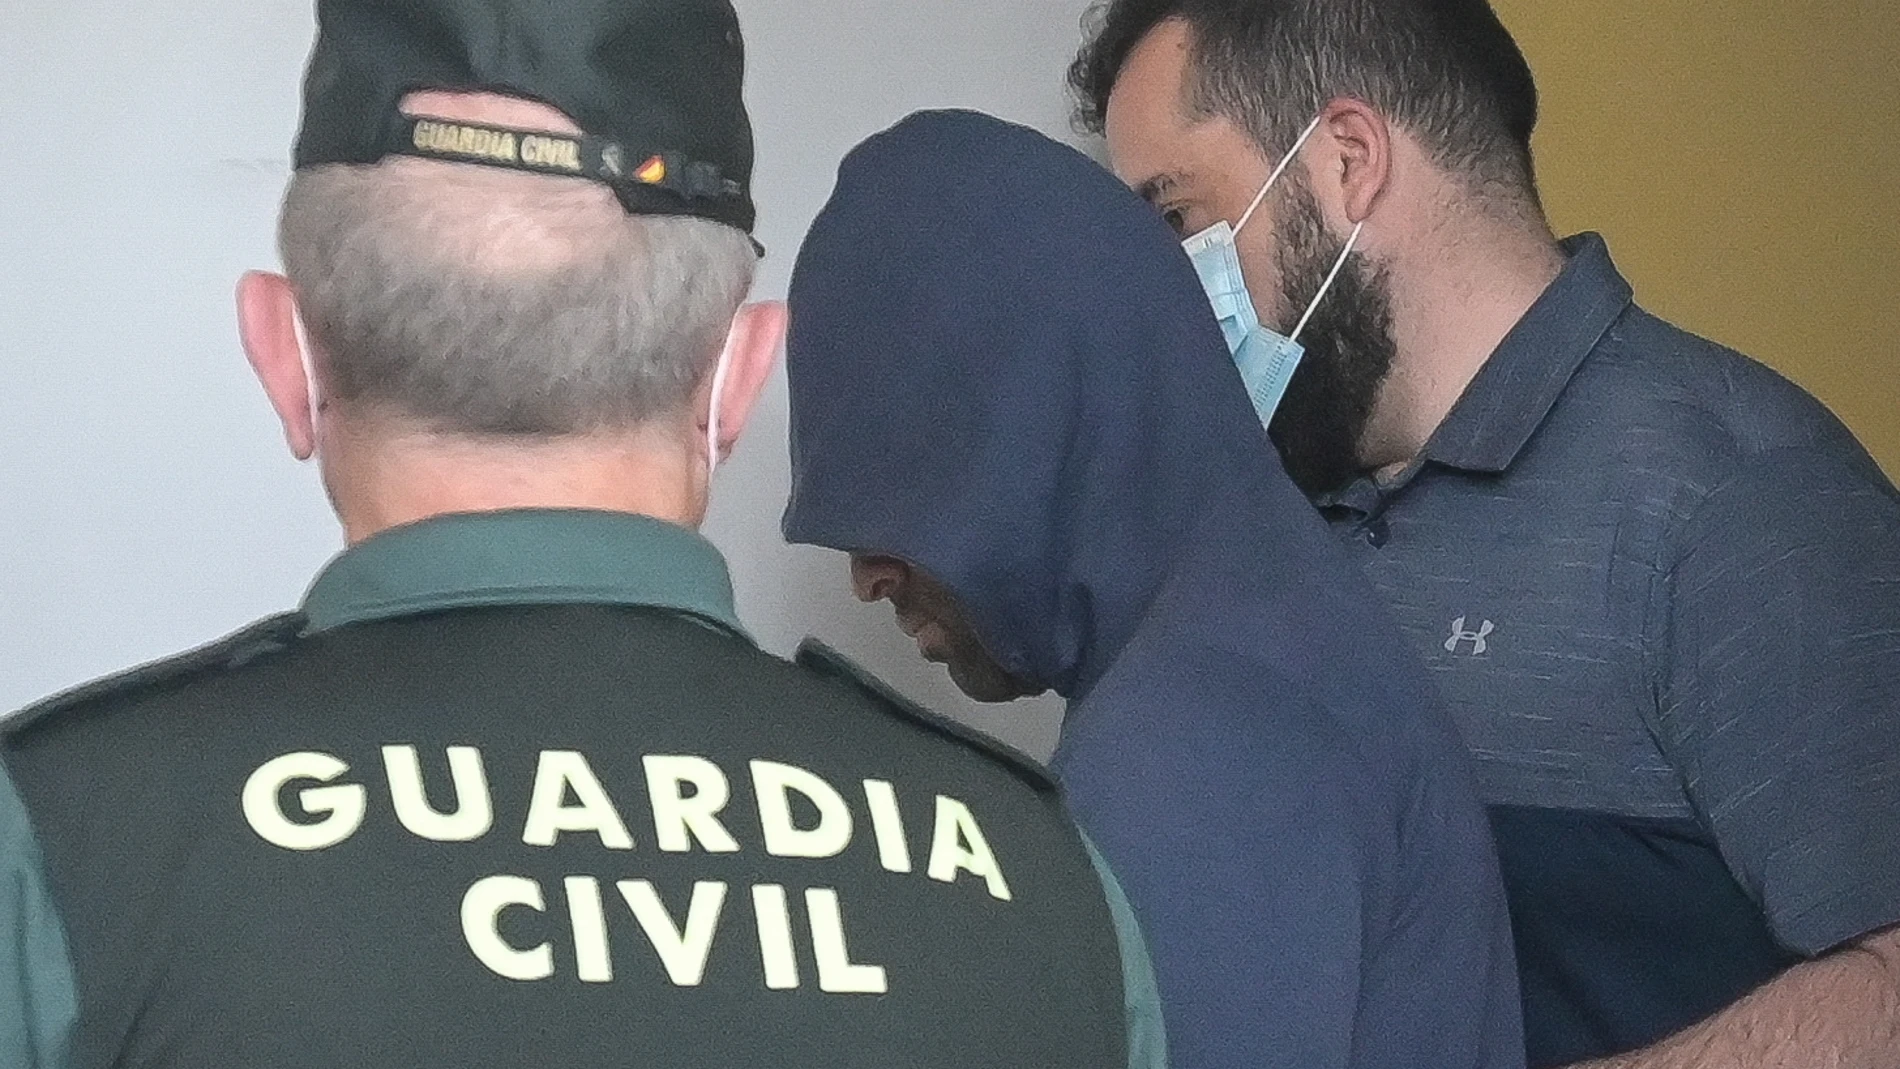 Dos agentes llevan al hombre detenido por haber agredido supuestamente a su pareja, para ser puesto en disposición judicial, en el Juzgado de Instrucción número 1, a 1 de junio de 2022, en Carballo, A Coruña, Galicia (España)